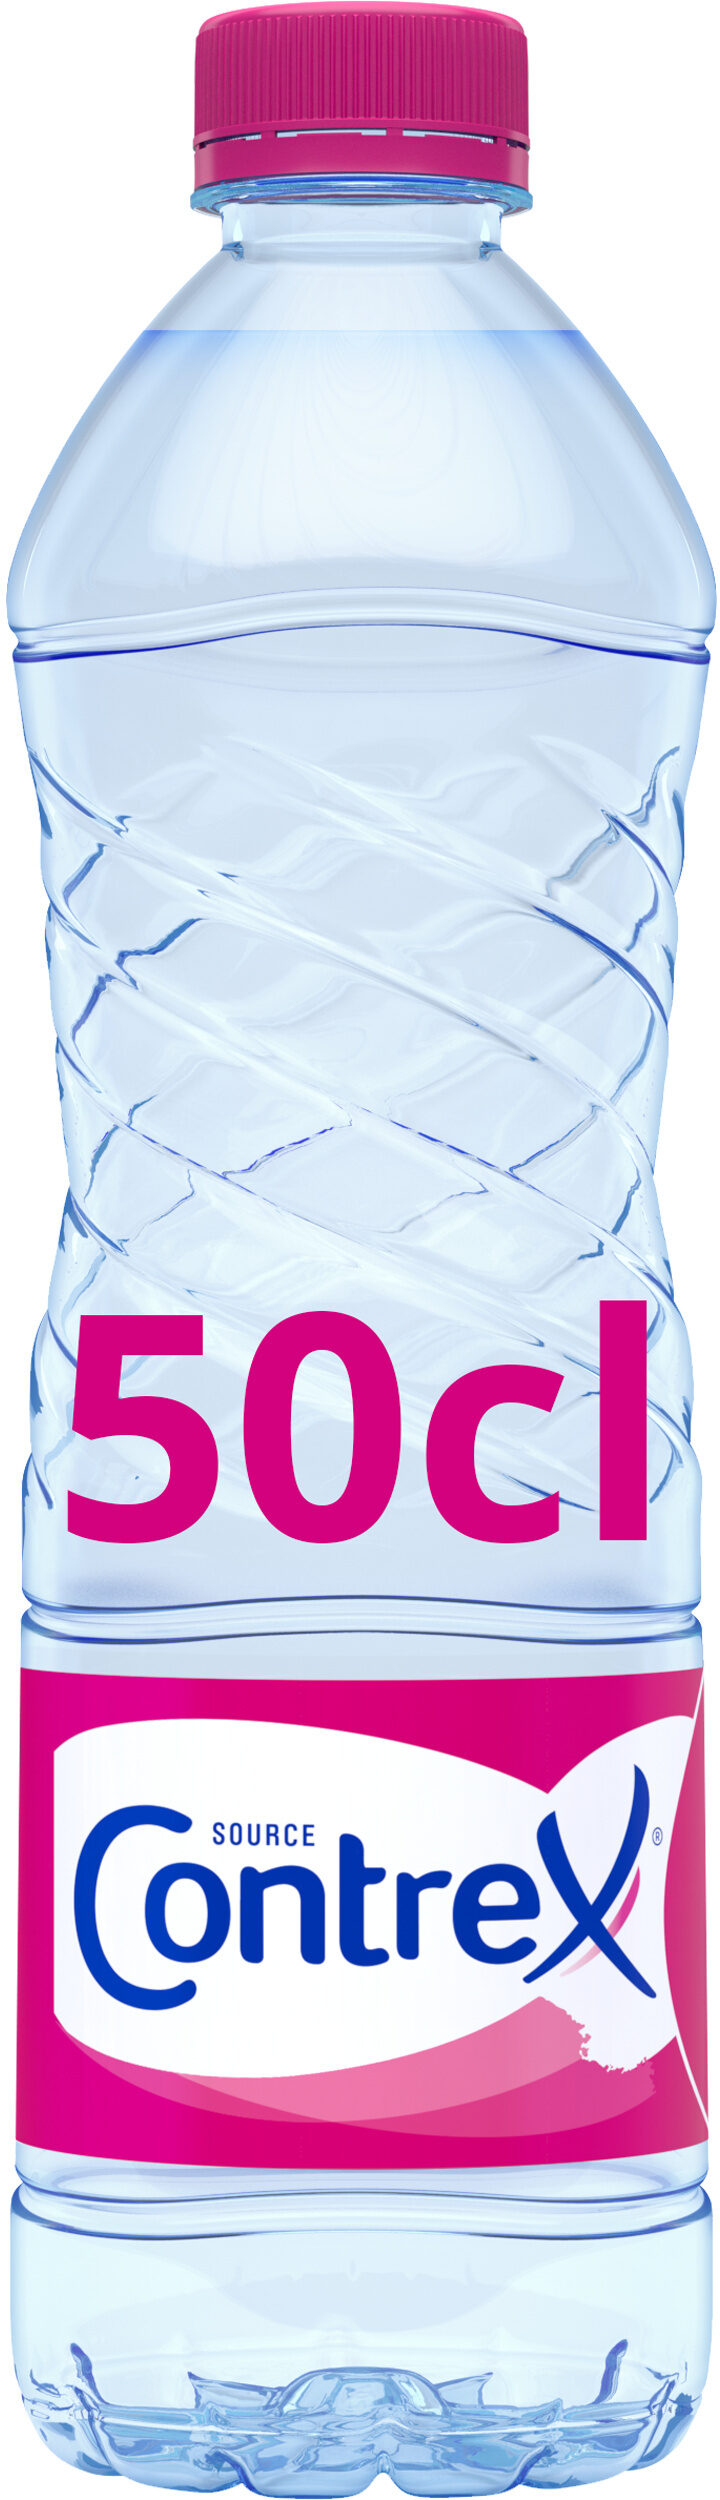 eau minérale naturelle - Produit